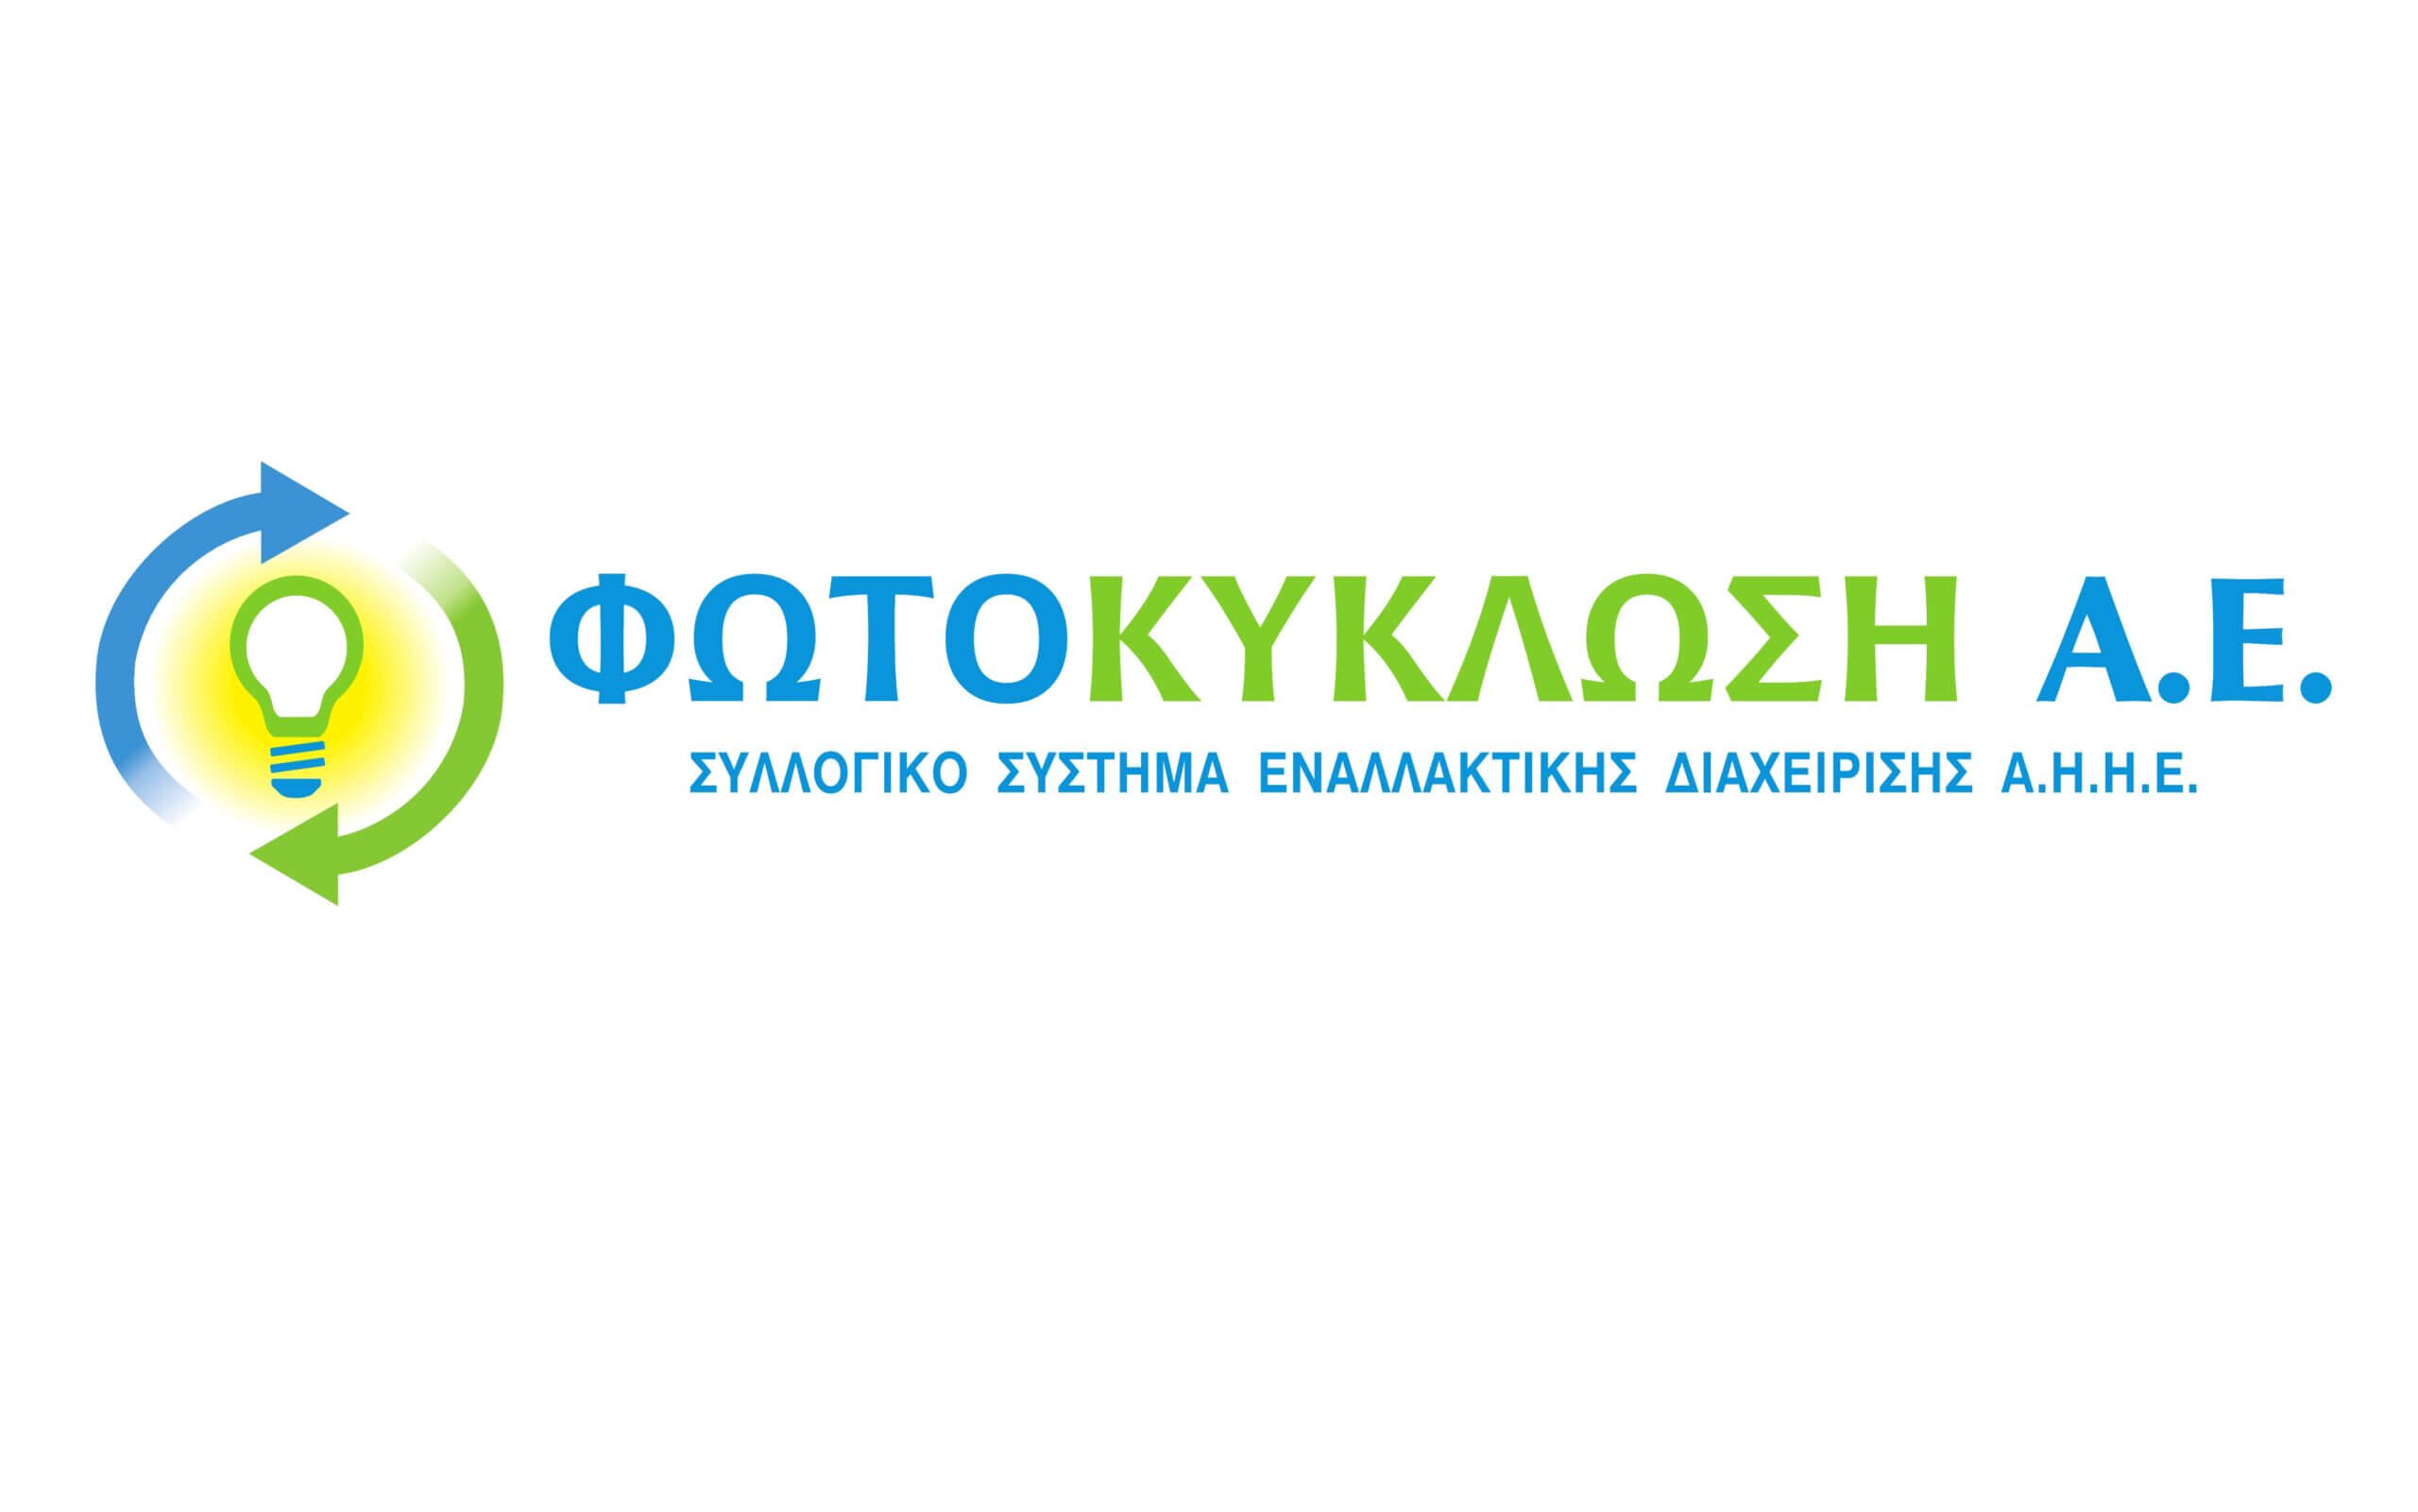 Fotokiklosi logo high